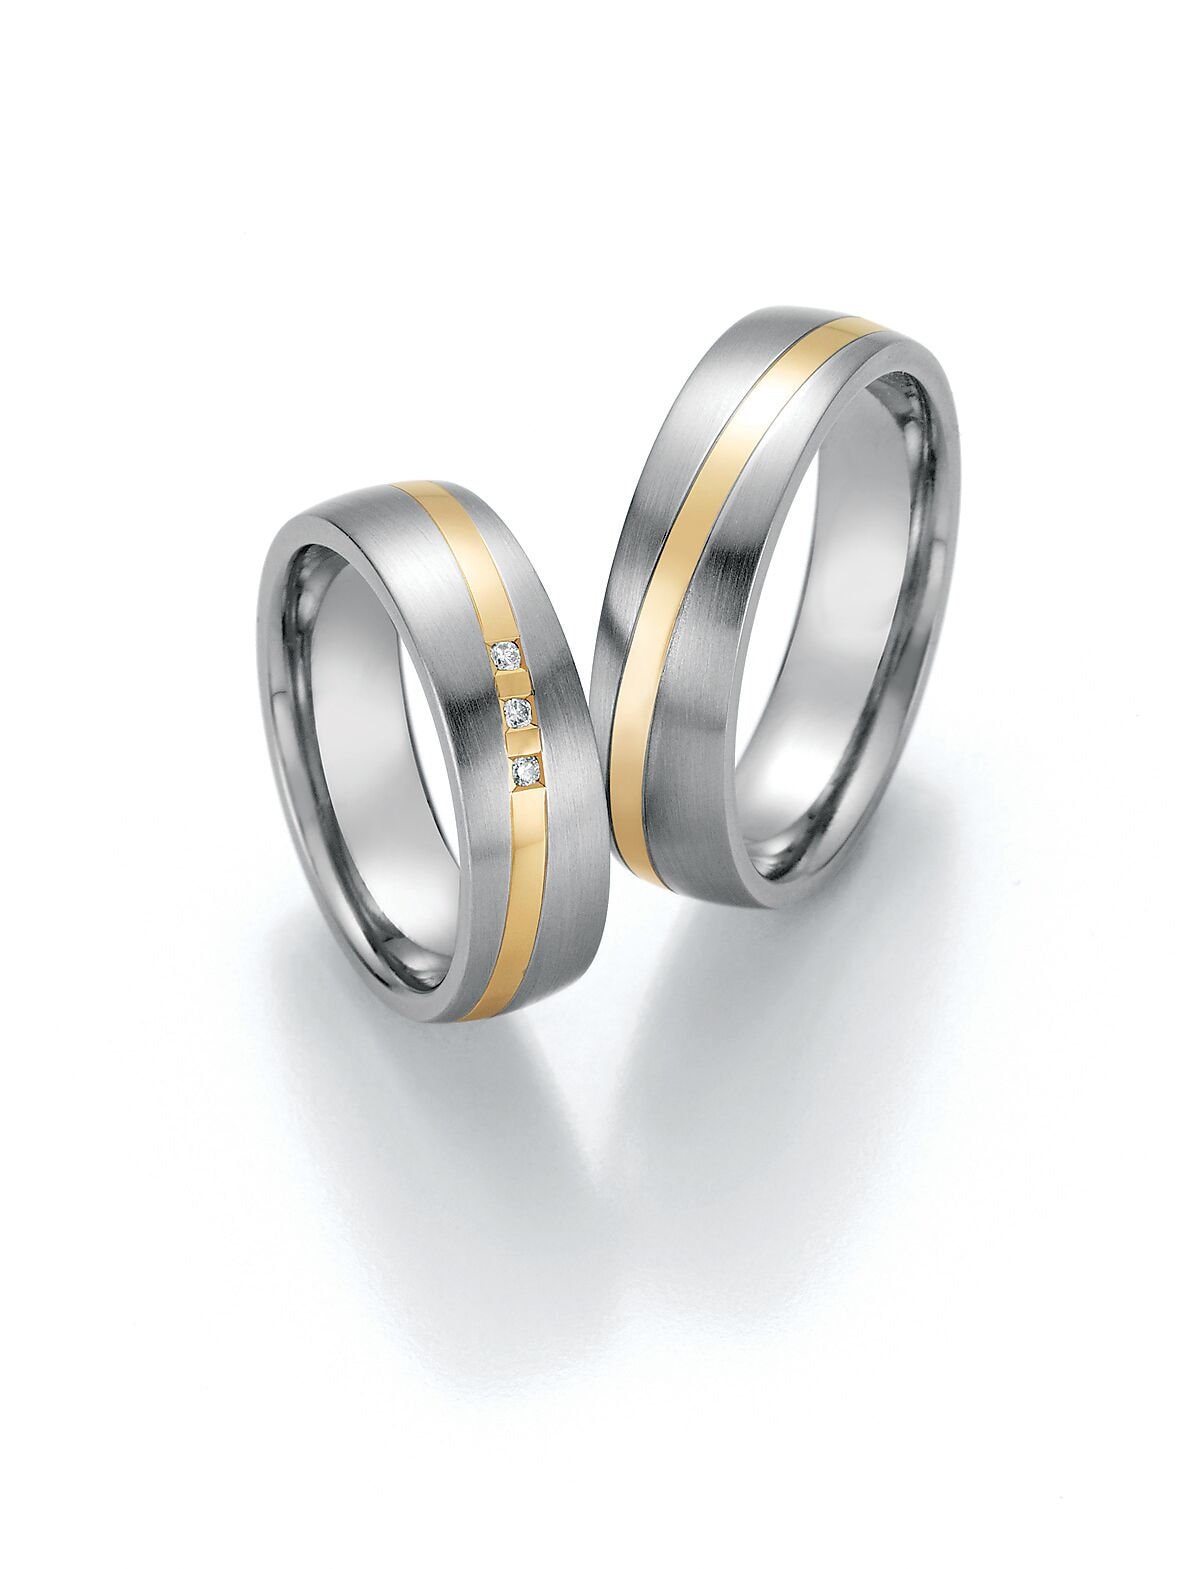 585 Goldringe & Steel Mit Diamant Paar Ehering Verlobungsringe Antragsringe Trauring Hochzeitsring Wedding Rings Engagement Diamond von SchmuckDepot